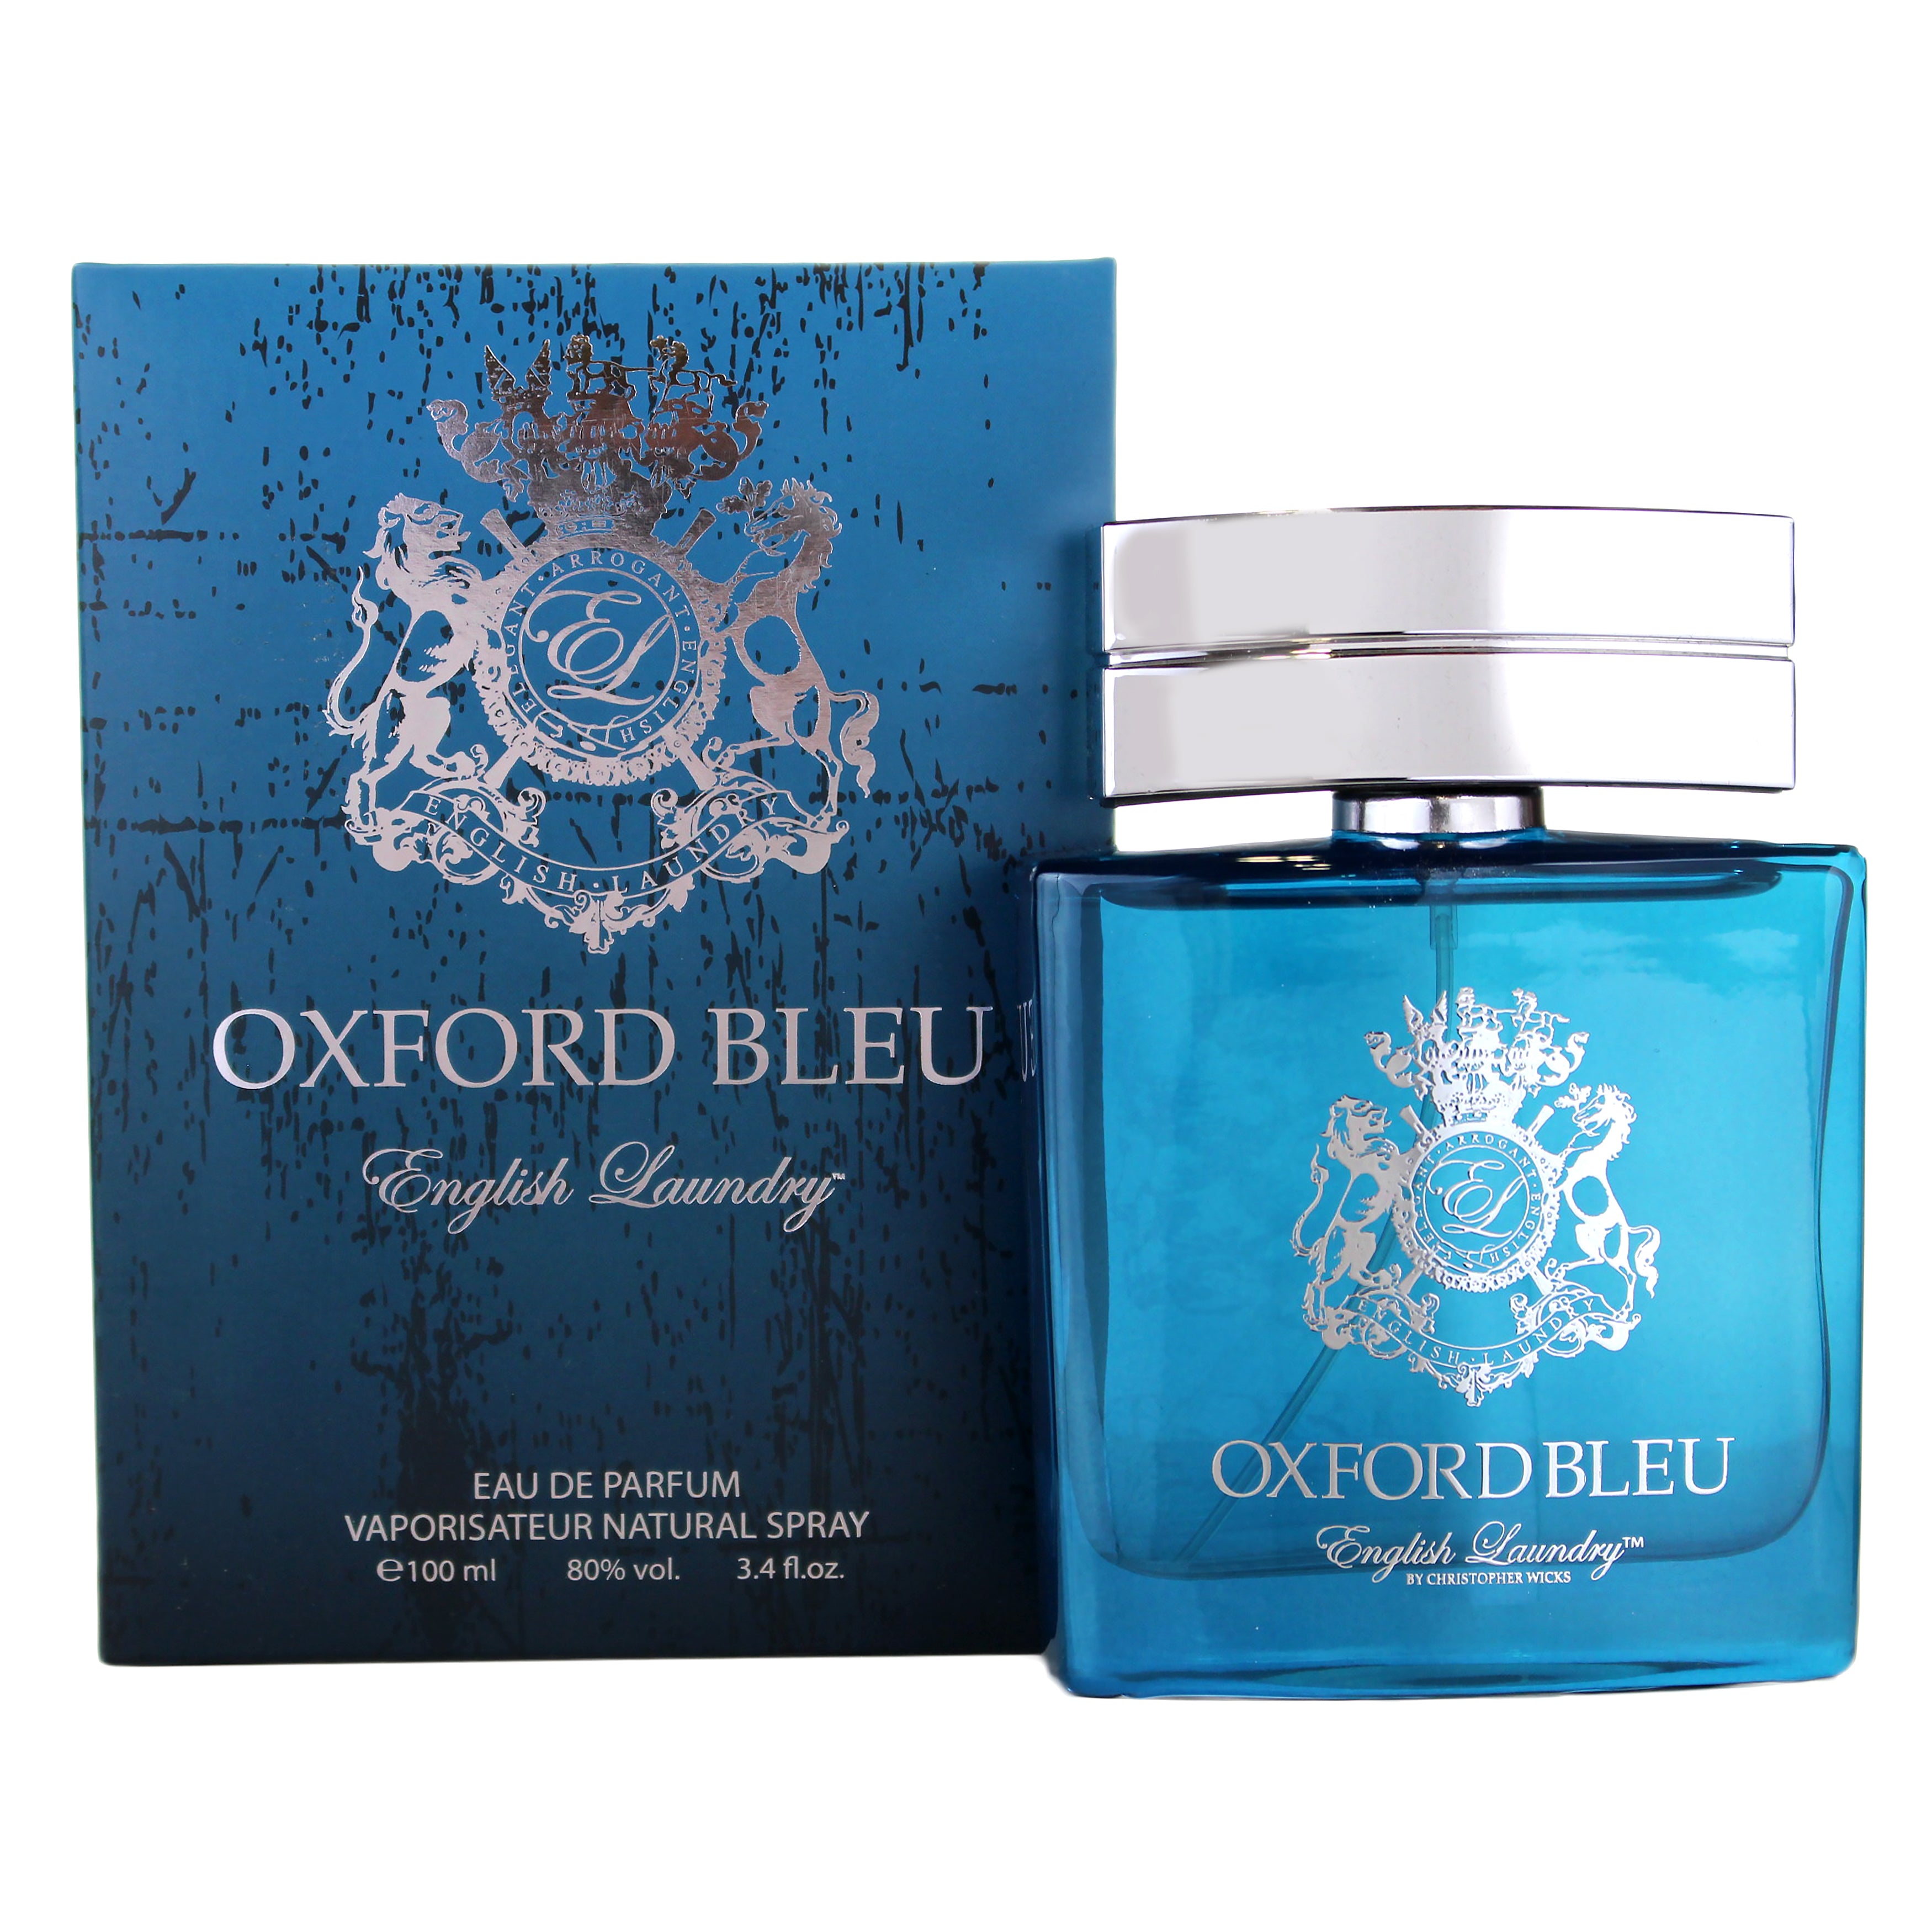 Oxford Bleu Cologne Eau De Parfum by English Laundry